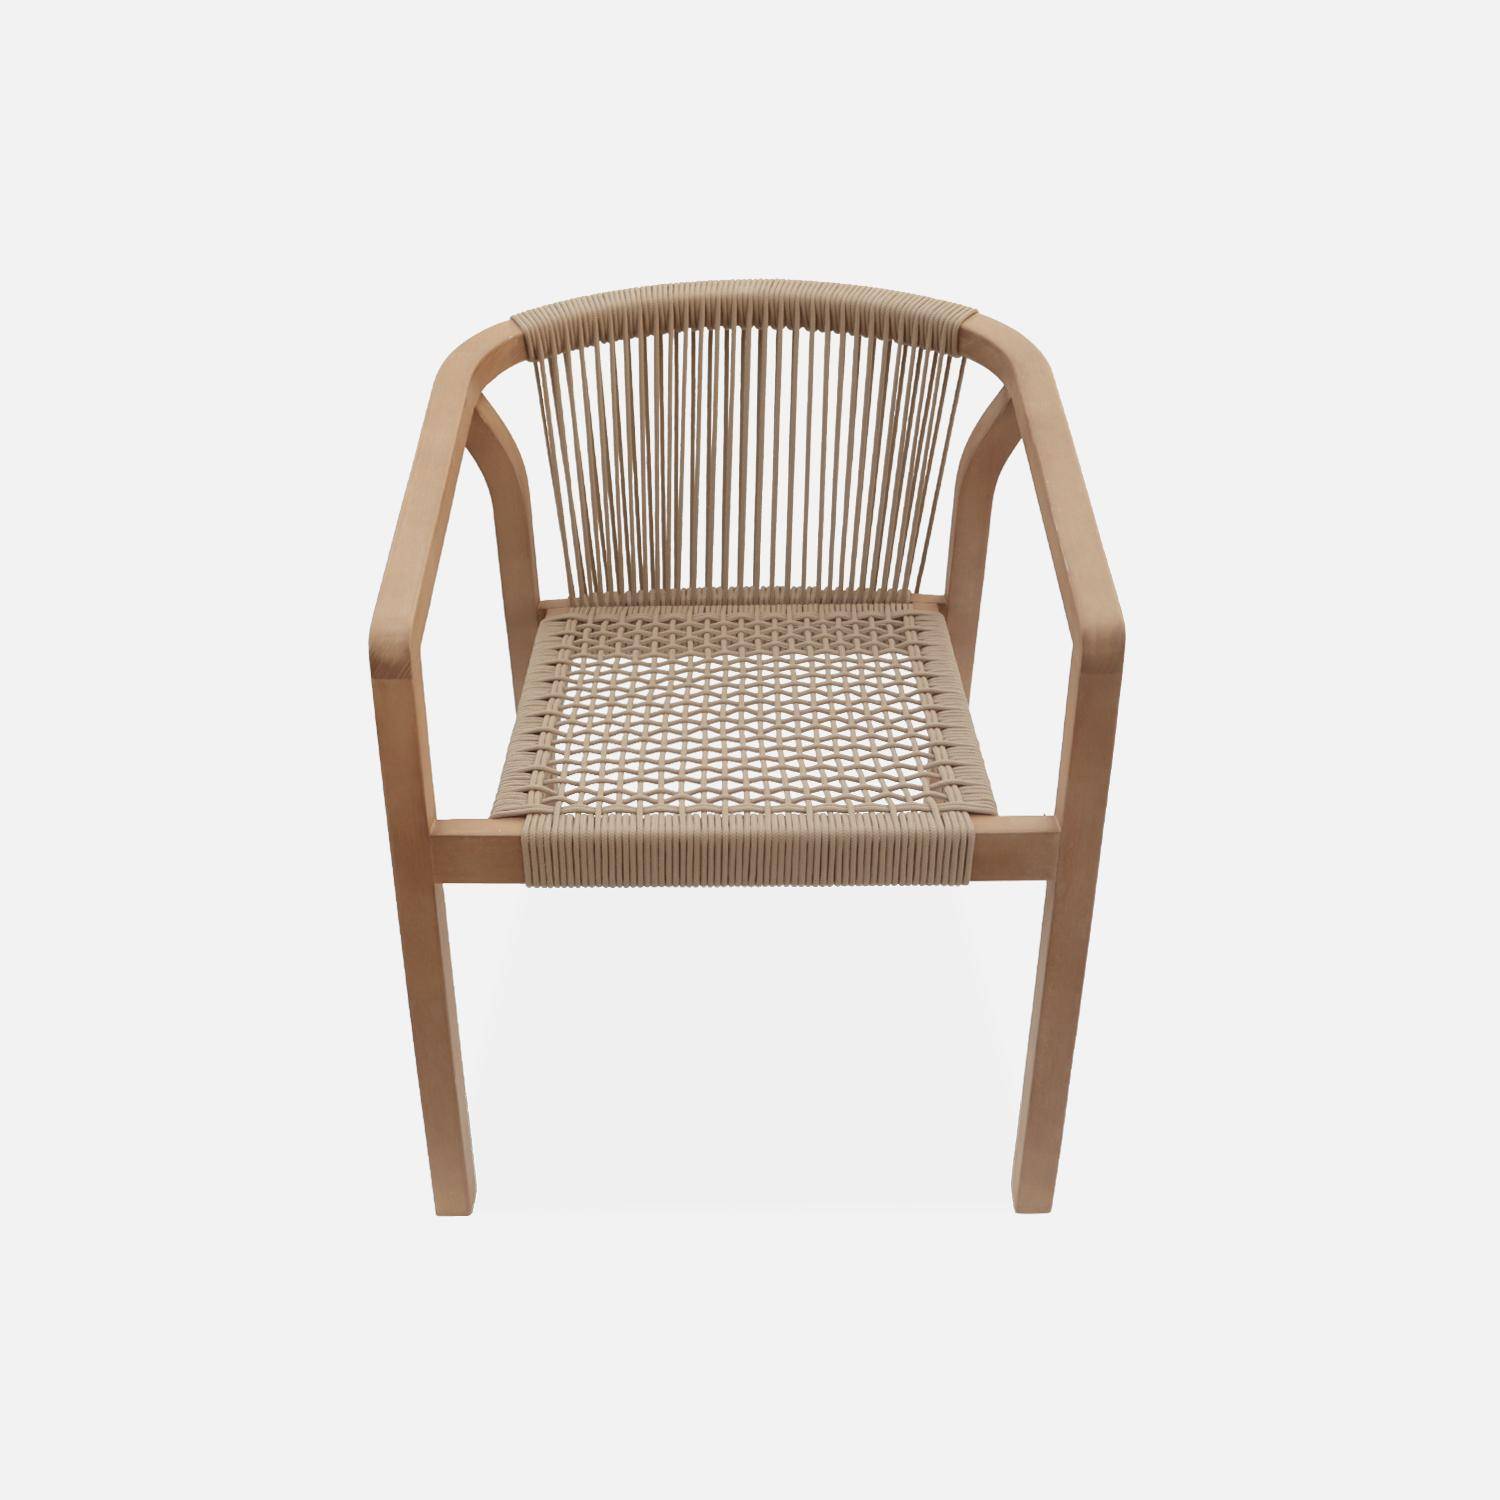 Juego de 2 sillas de jardín de madera y cuerda, apilables, para interior/exterior,sweeek,Photo5